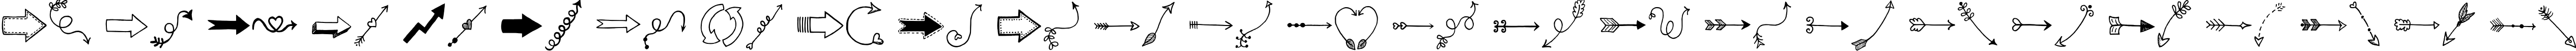 Пример написания английского алфавита шрифтом Tanaestel Doodle Arrows Regular